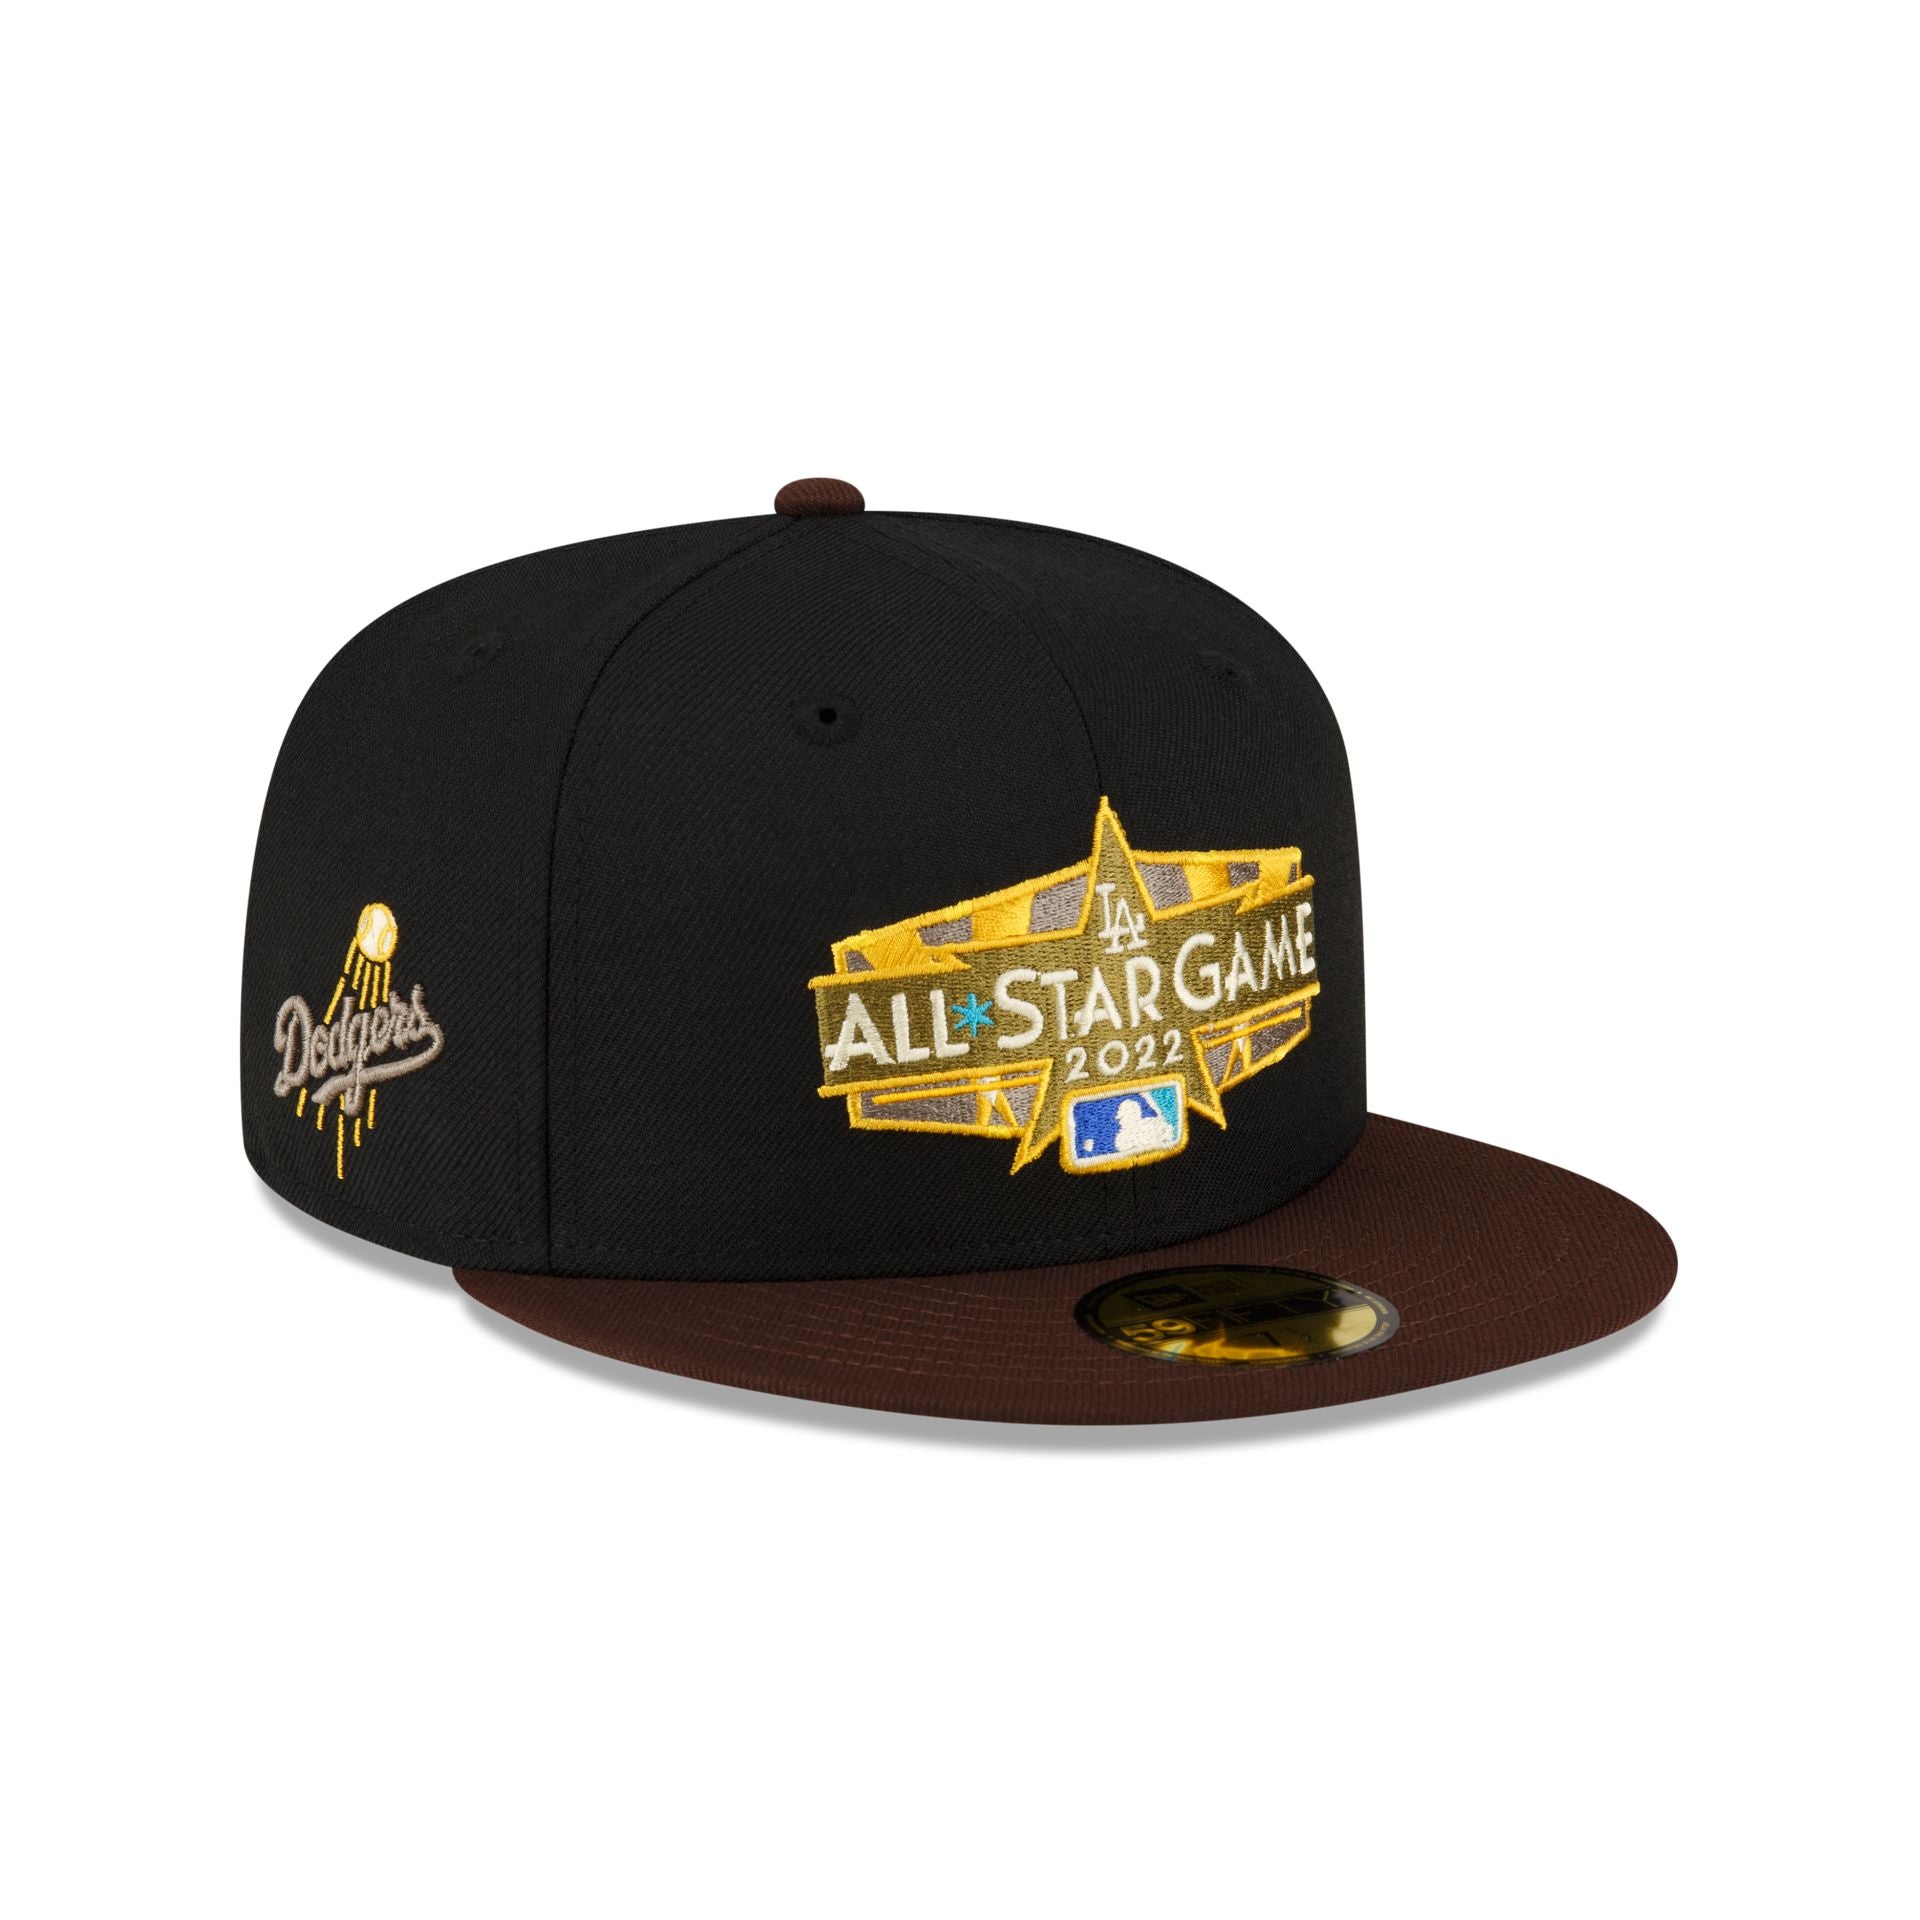 Dodgers Summer Ballpark Adjustable Black Hat